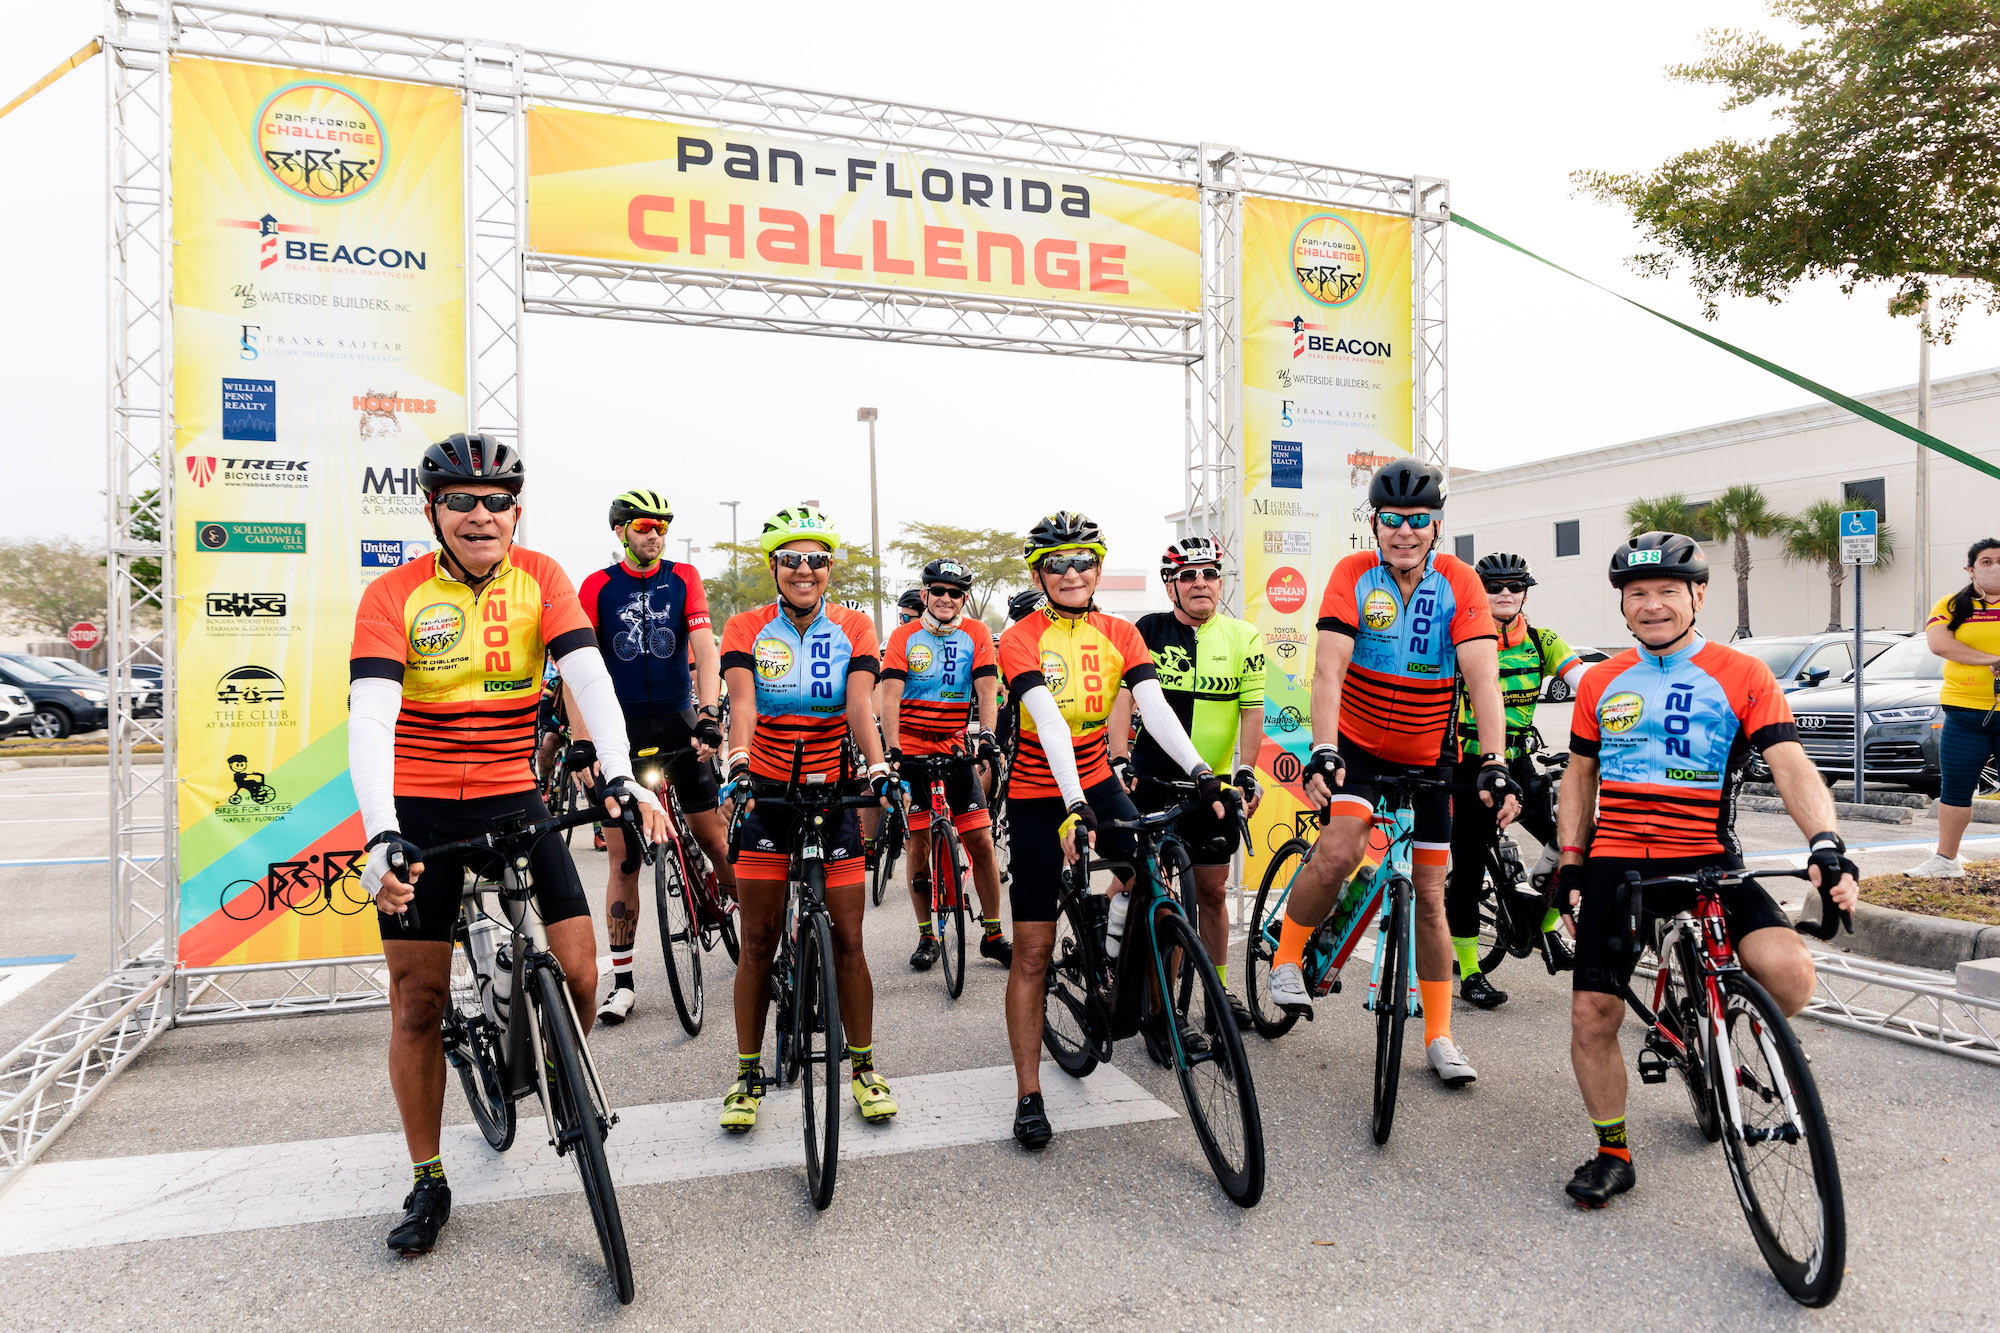 Pan-Florida Challenge secures major sponsor for cancer ride